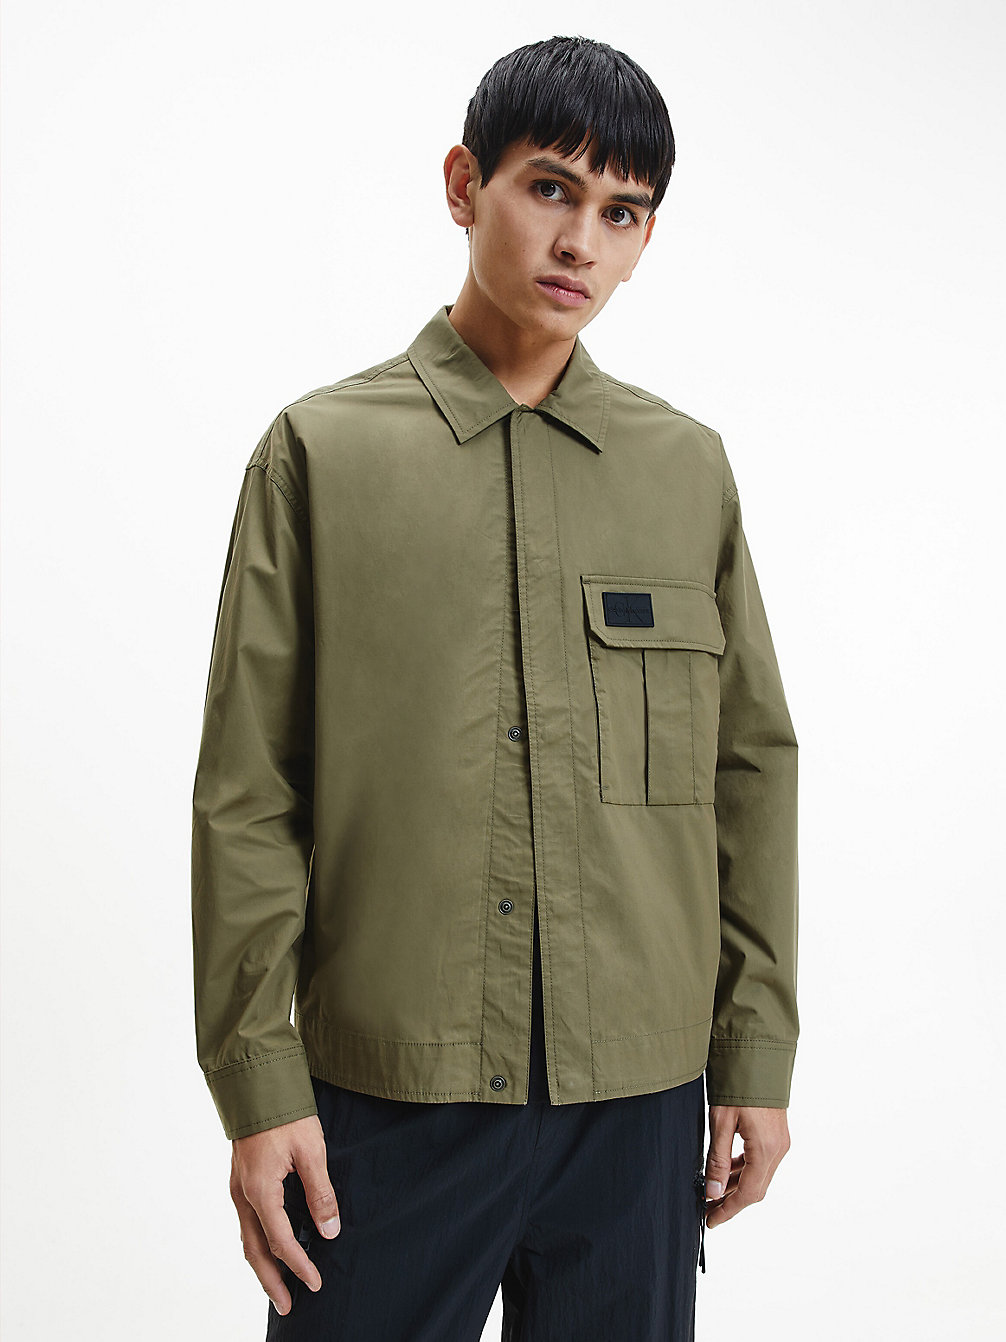 BURNT OLIVE Utility Shirt Jacket undefined men Calvin Klein